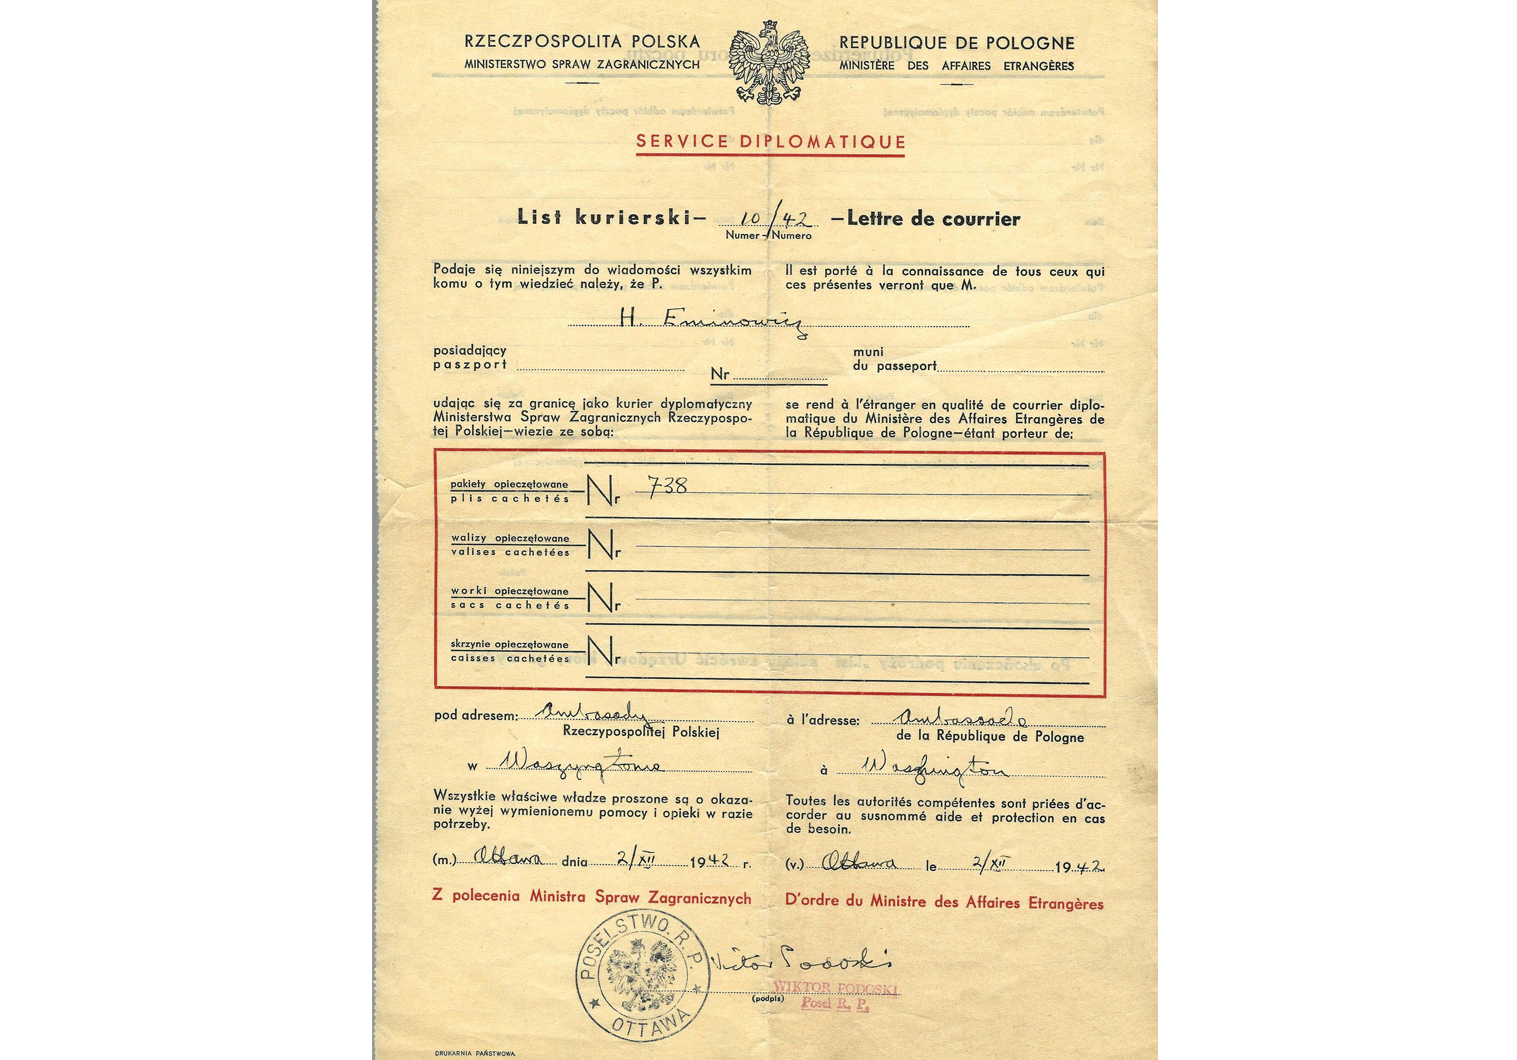 WW2 courier document